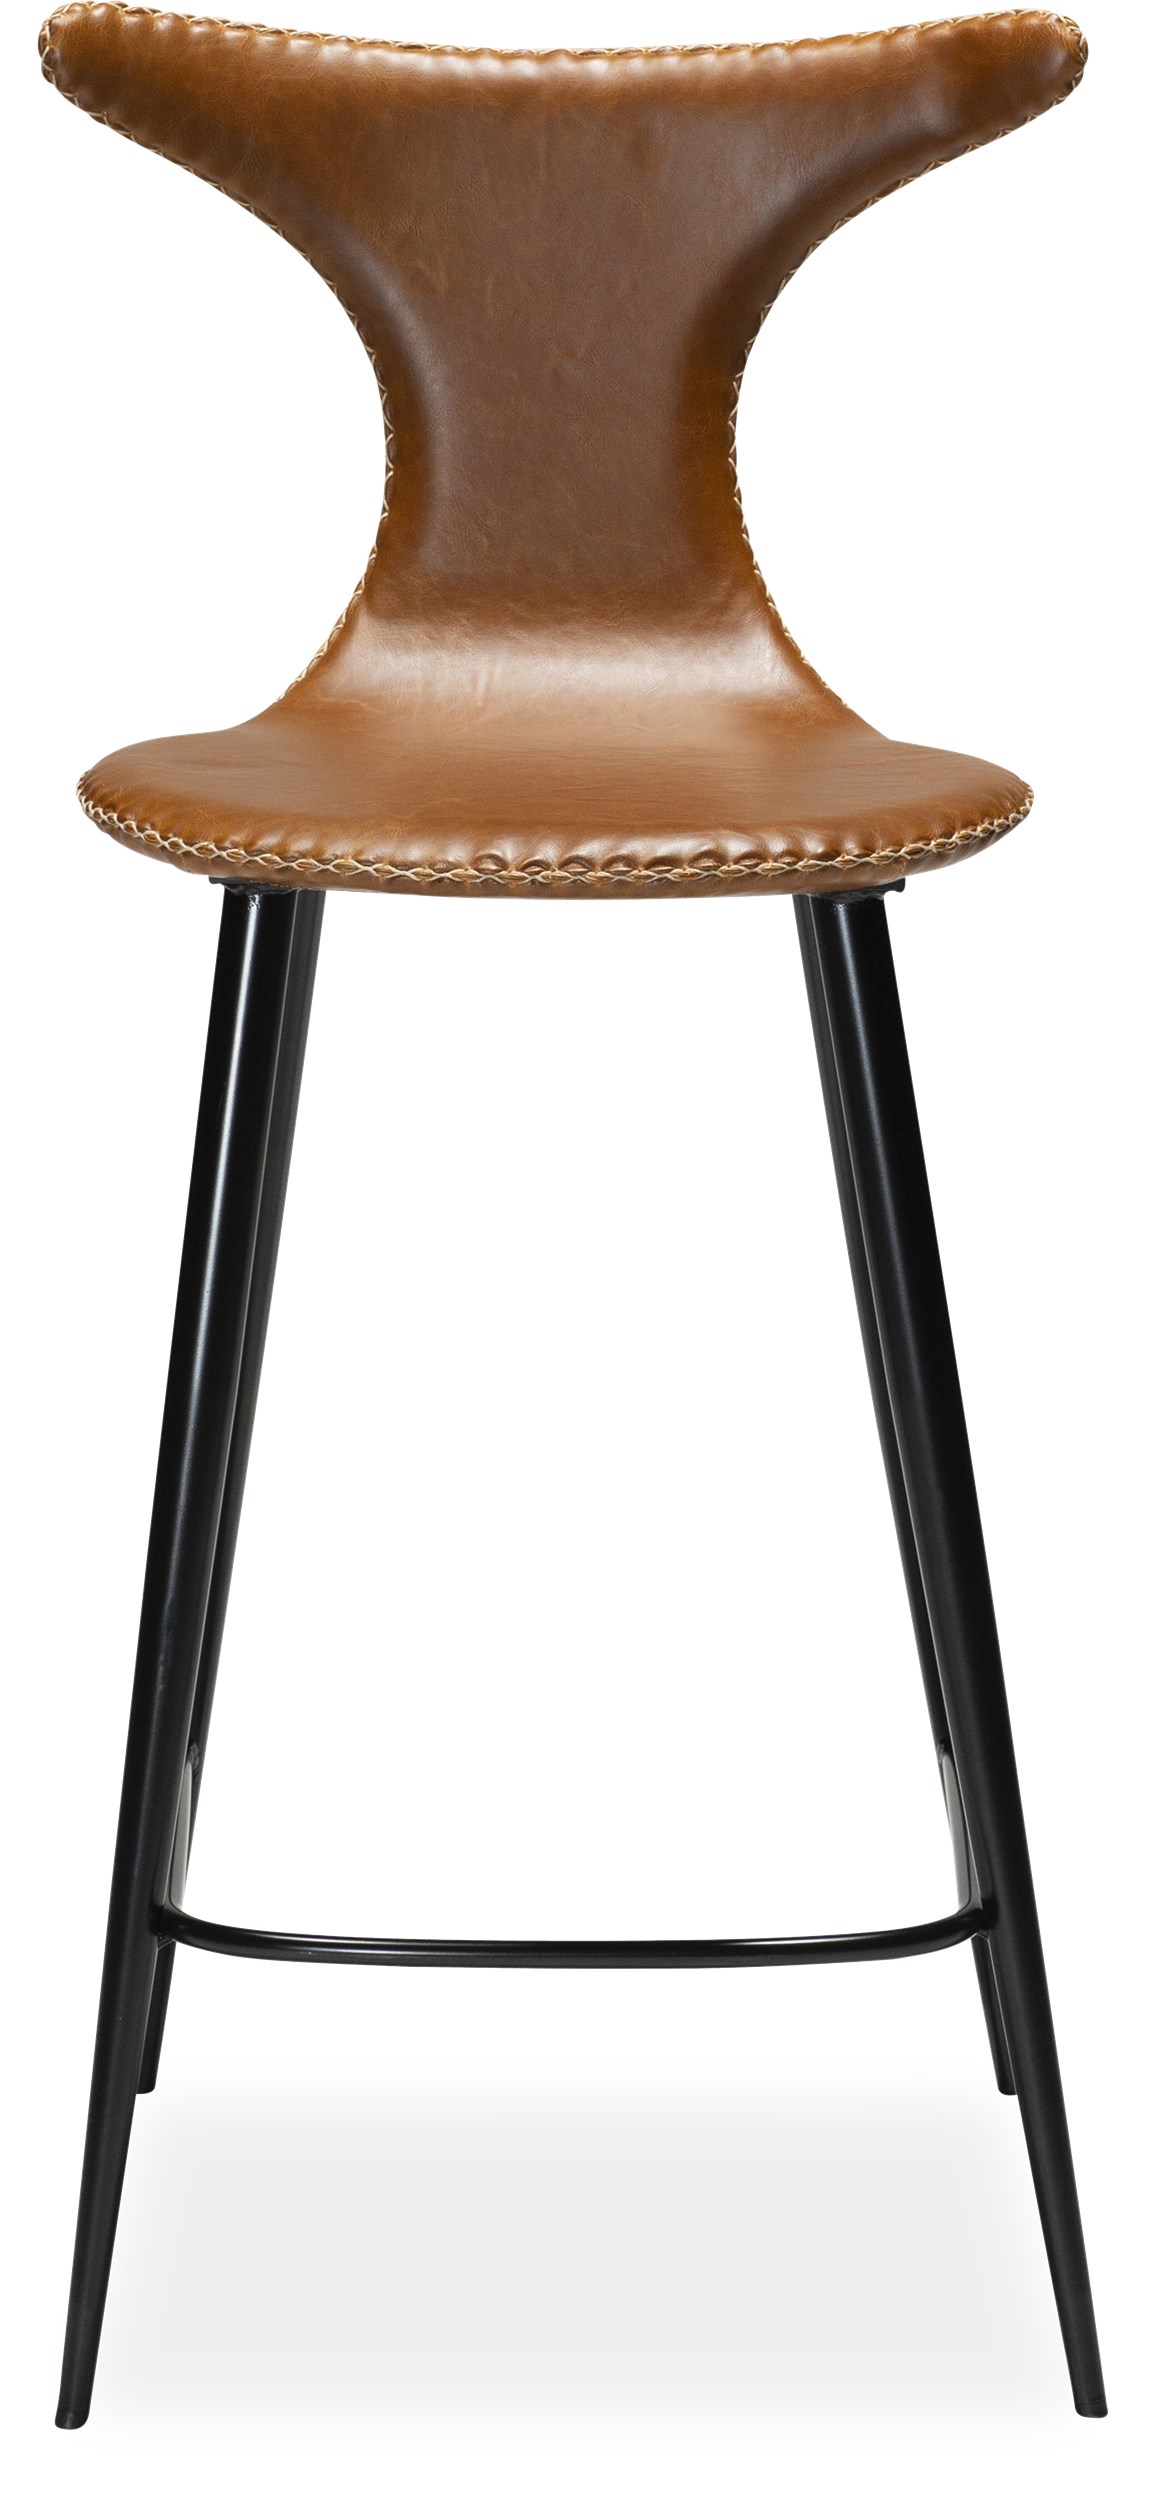 Dolphin Counterstol - Sits i vintage ljusbrunt konstläder, med kontrastfärgade sömmar och runda ben i svartlackerad metall